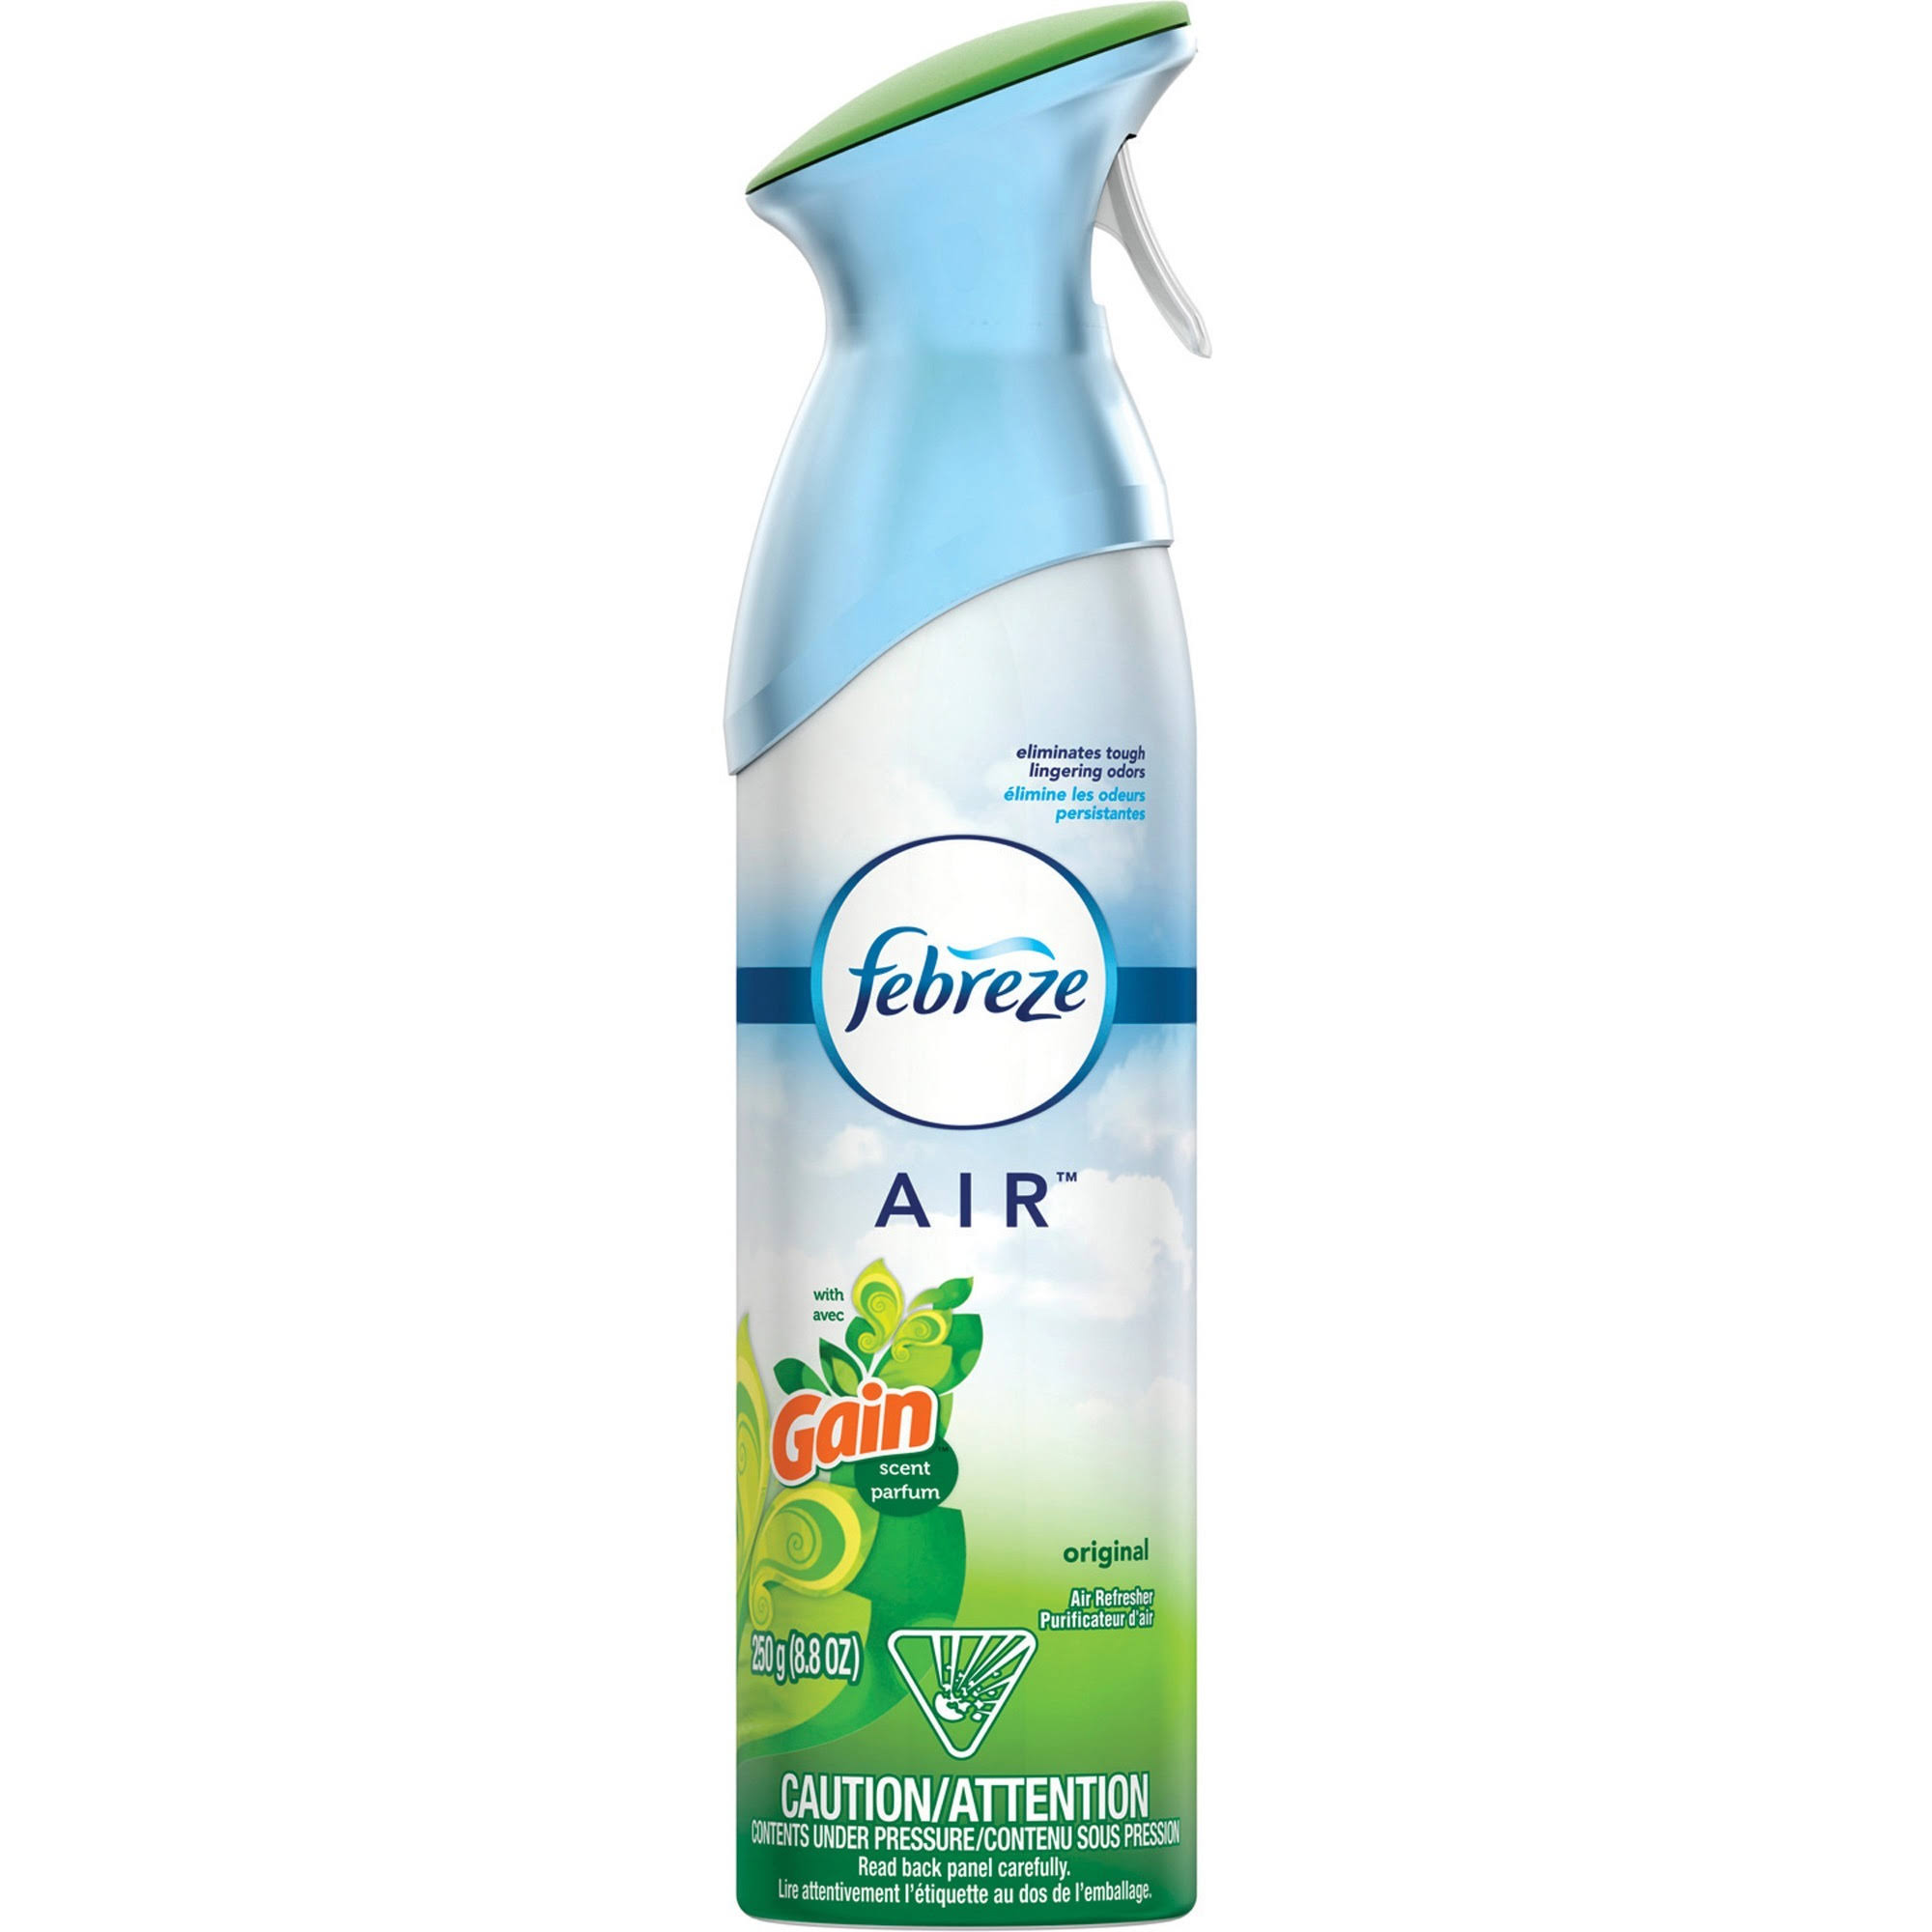 Febreze Air Freshener Spray - Gain, 250g